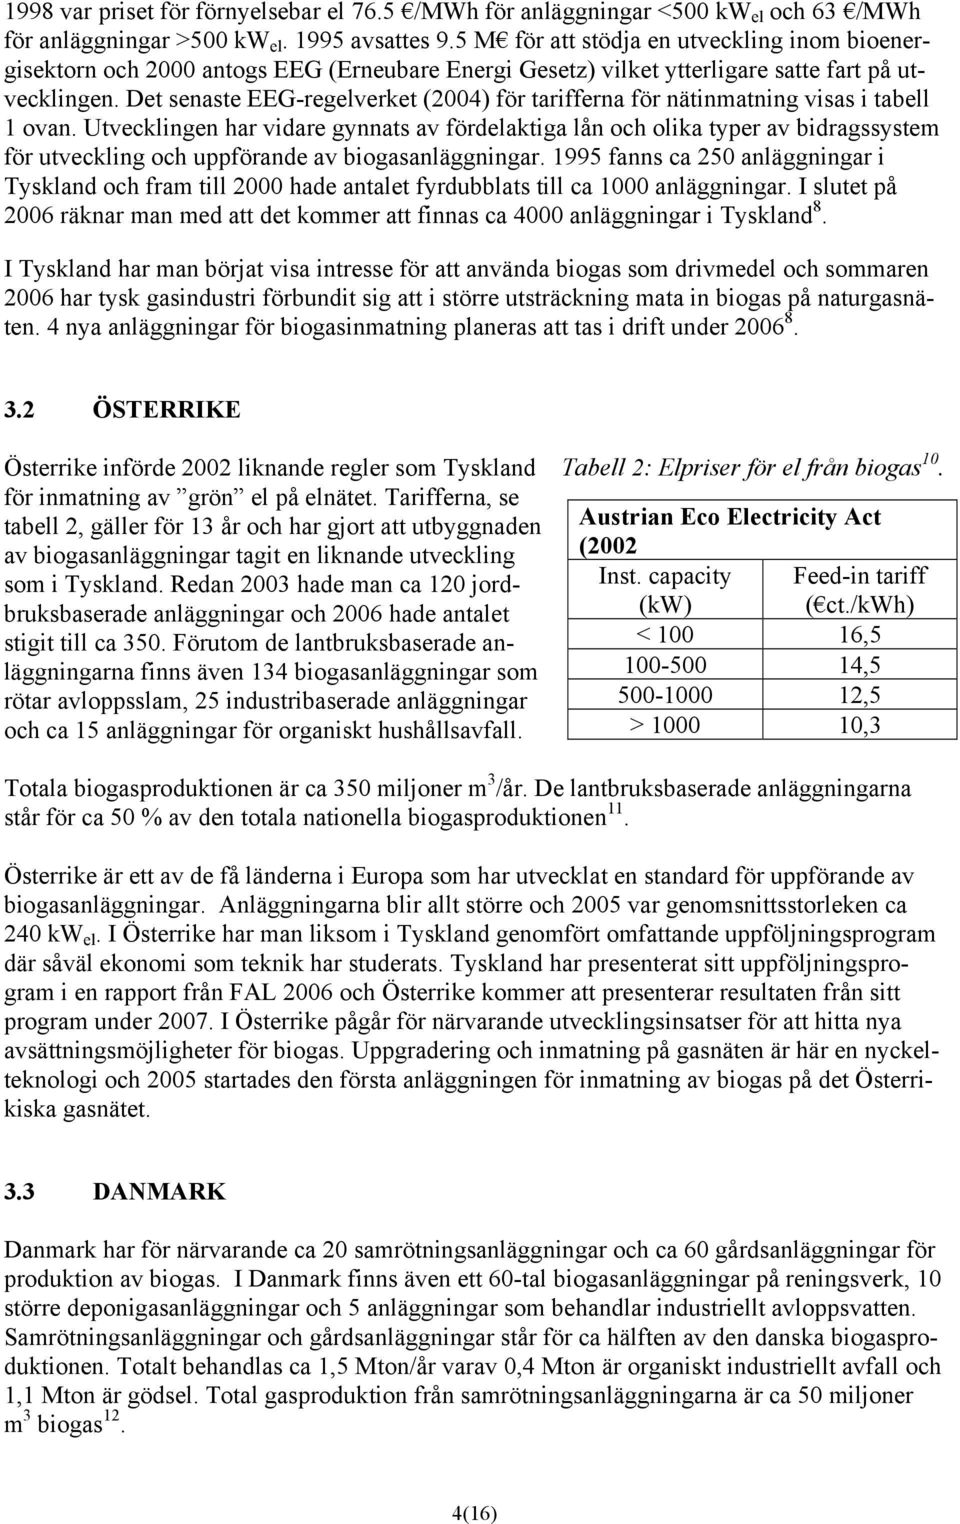 Det senaste EEG-regelverket (2004) för tarifferna för nätinmatning visas i tabell 1 ovan.